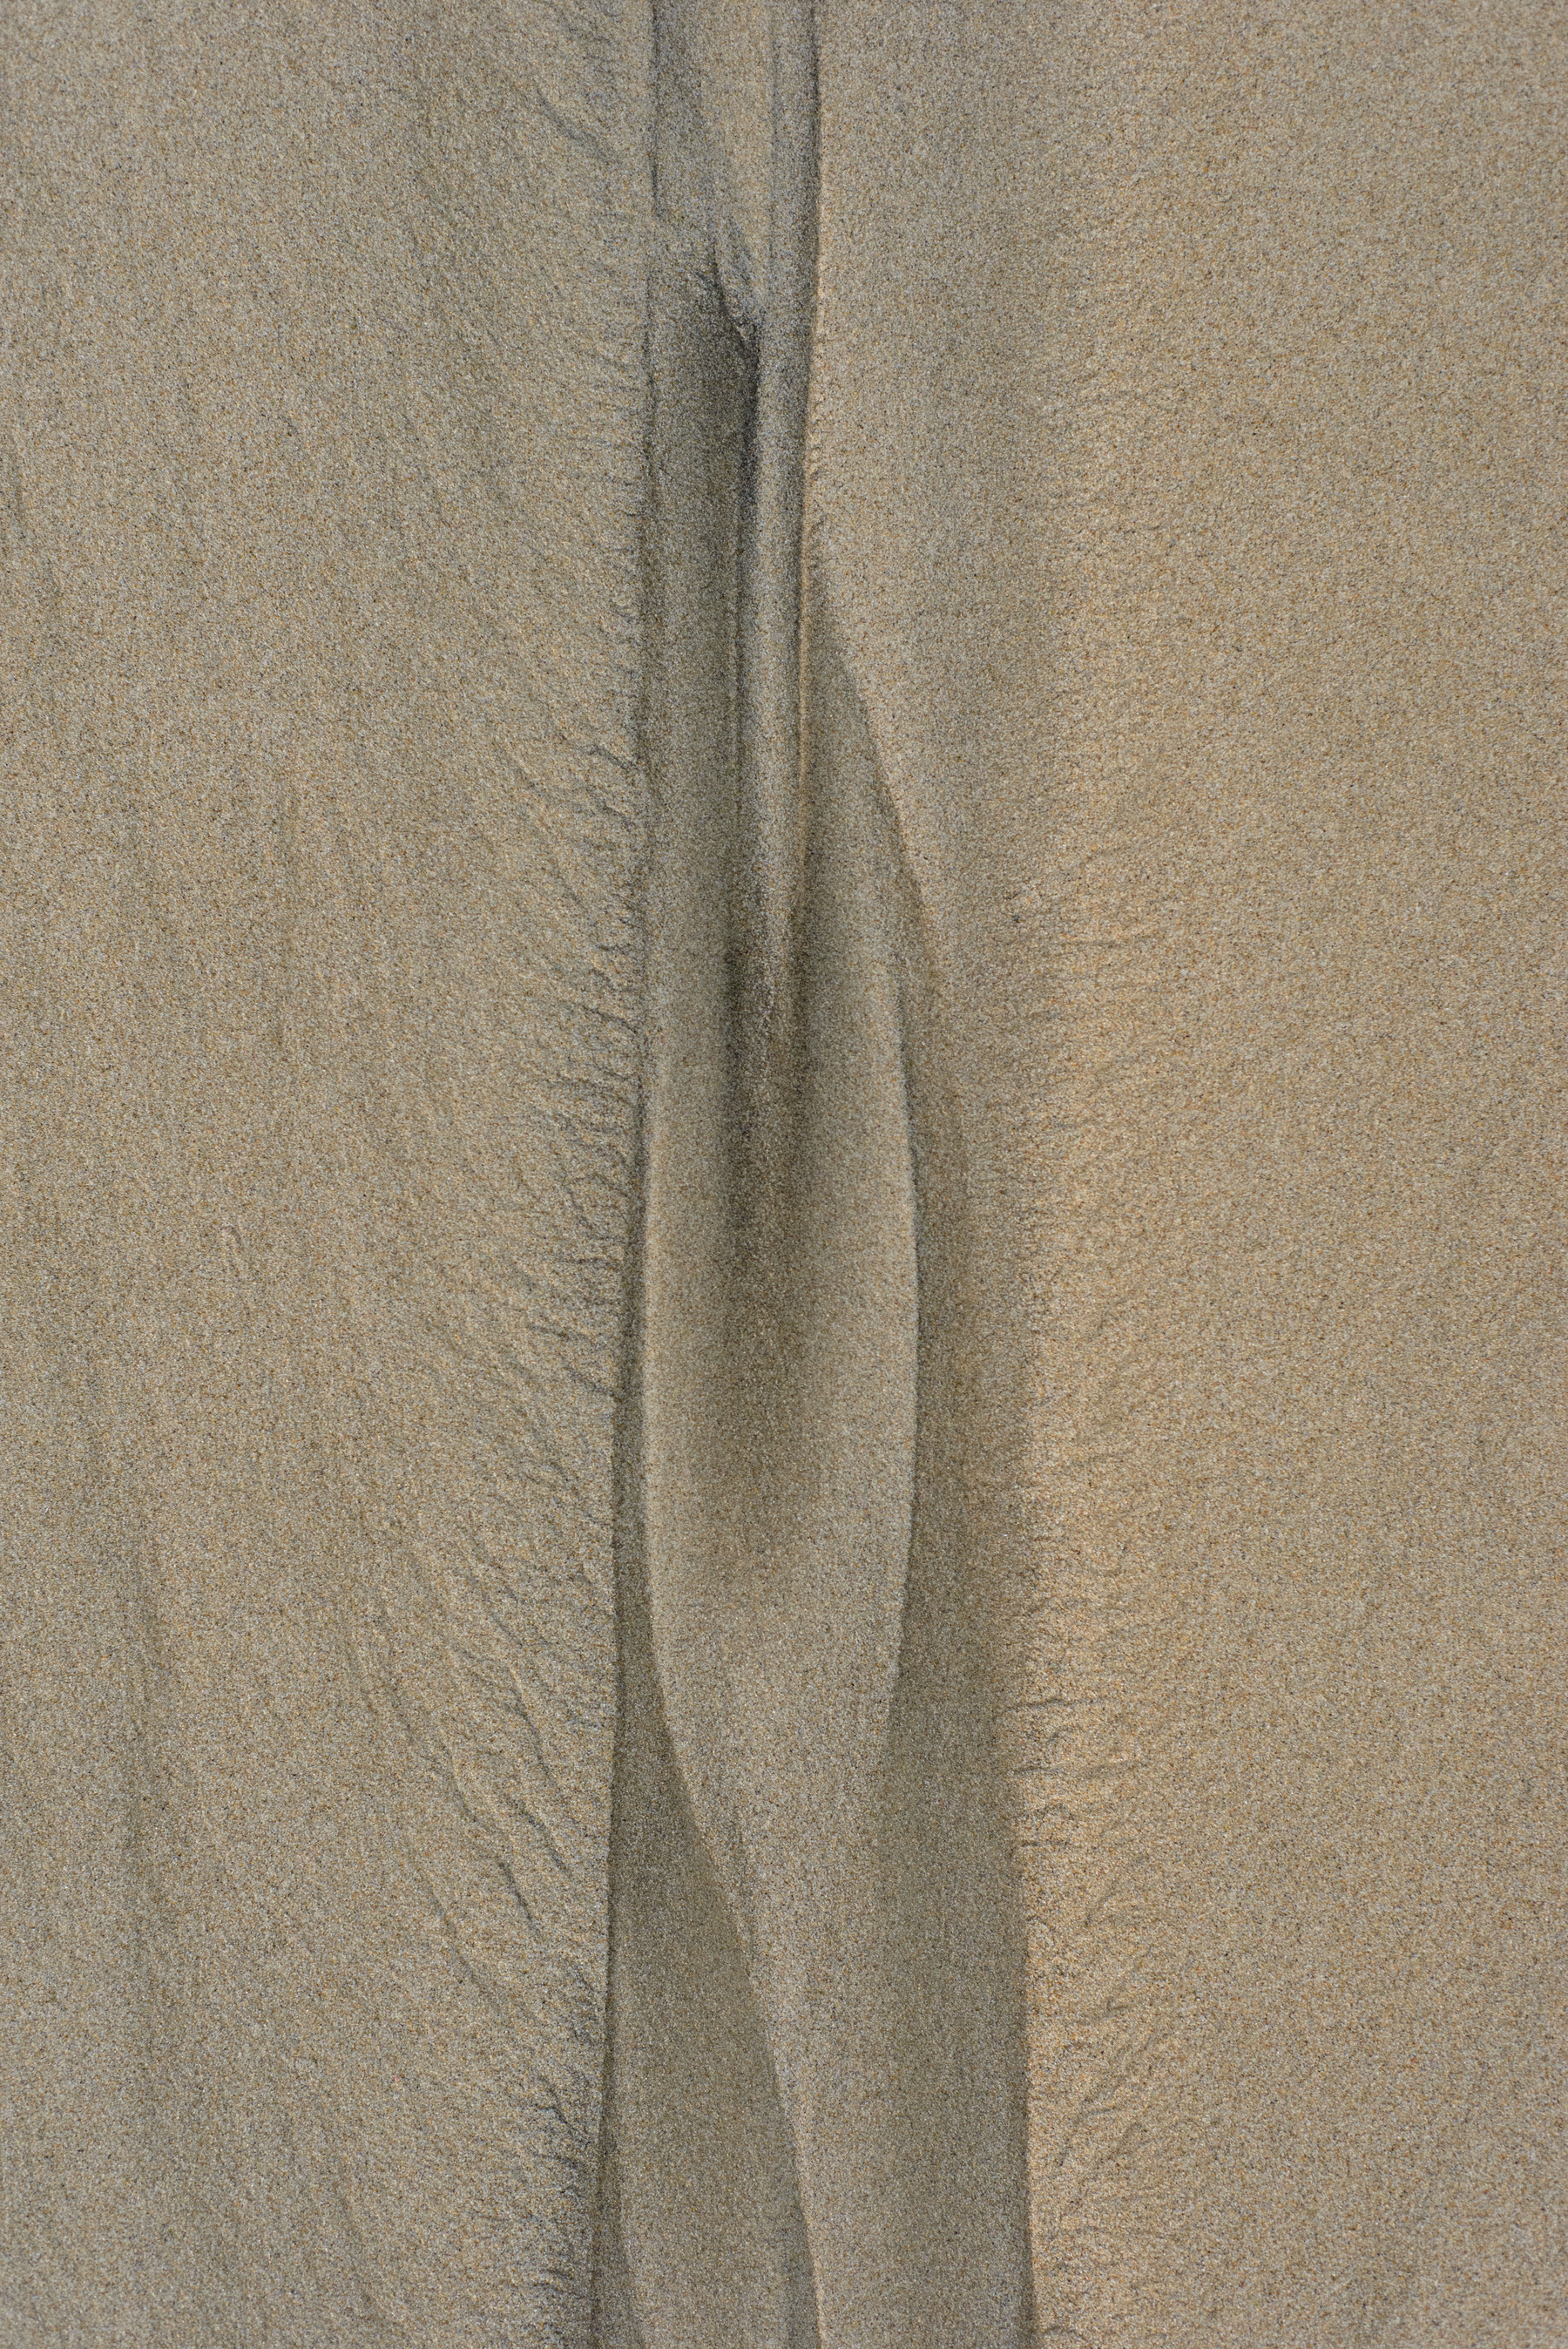 Erosion pattern in sand looking a little like a woman’s vulva.